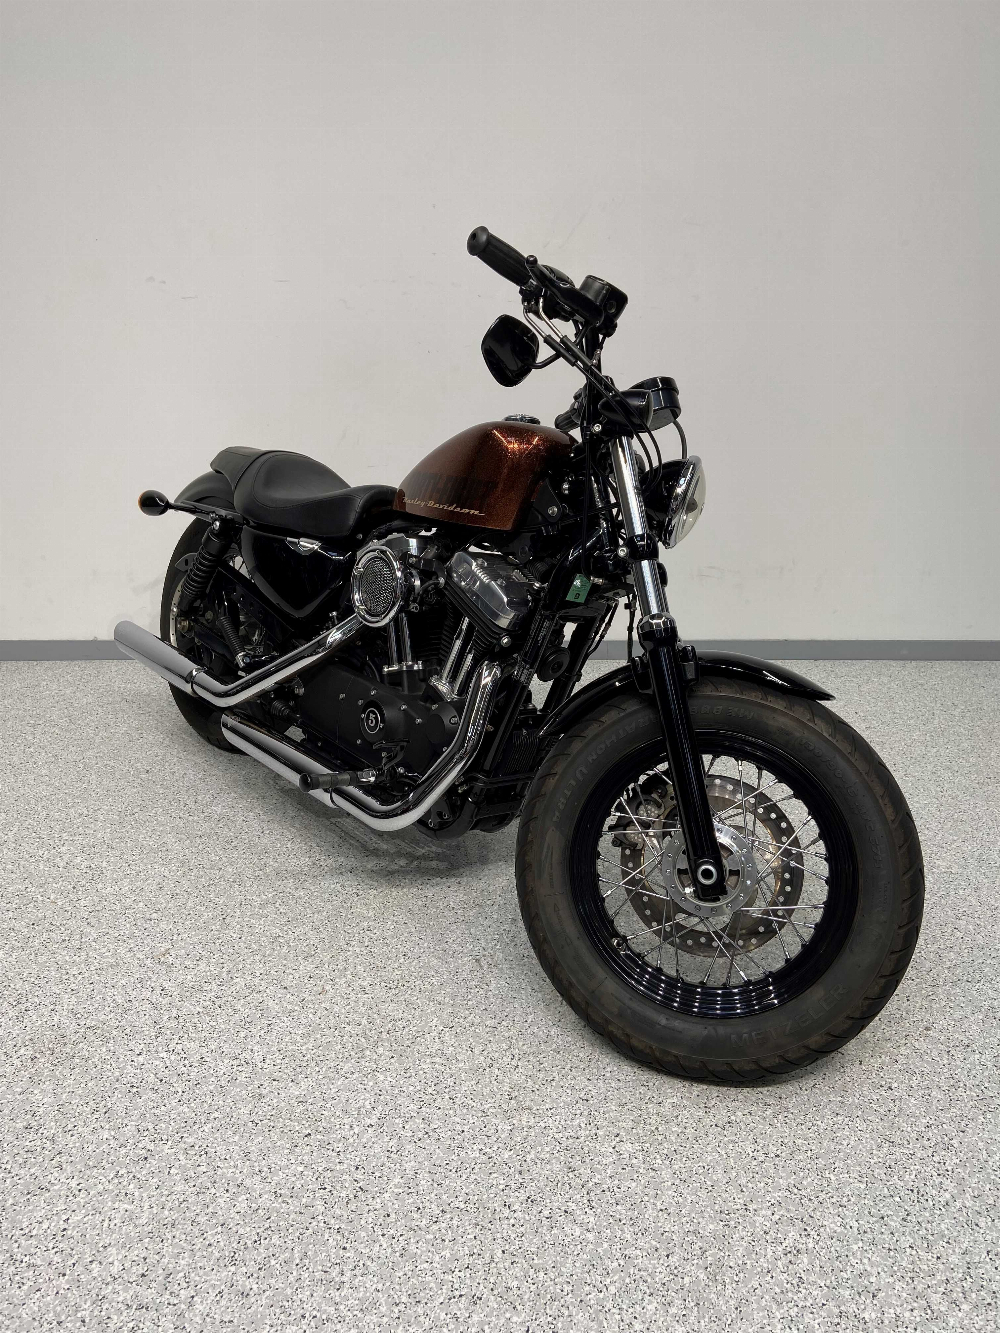 Harley-Davidson XL 1200 2014 vue 3/4 droite